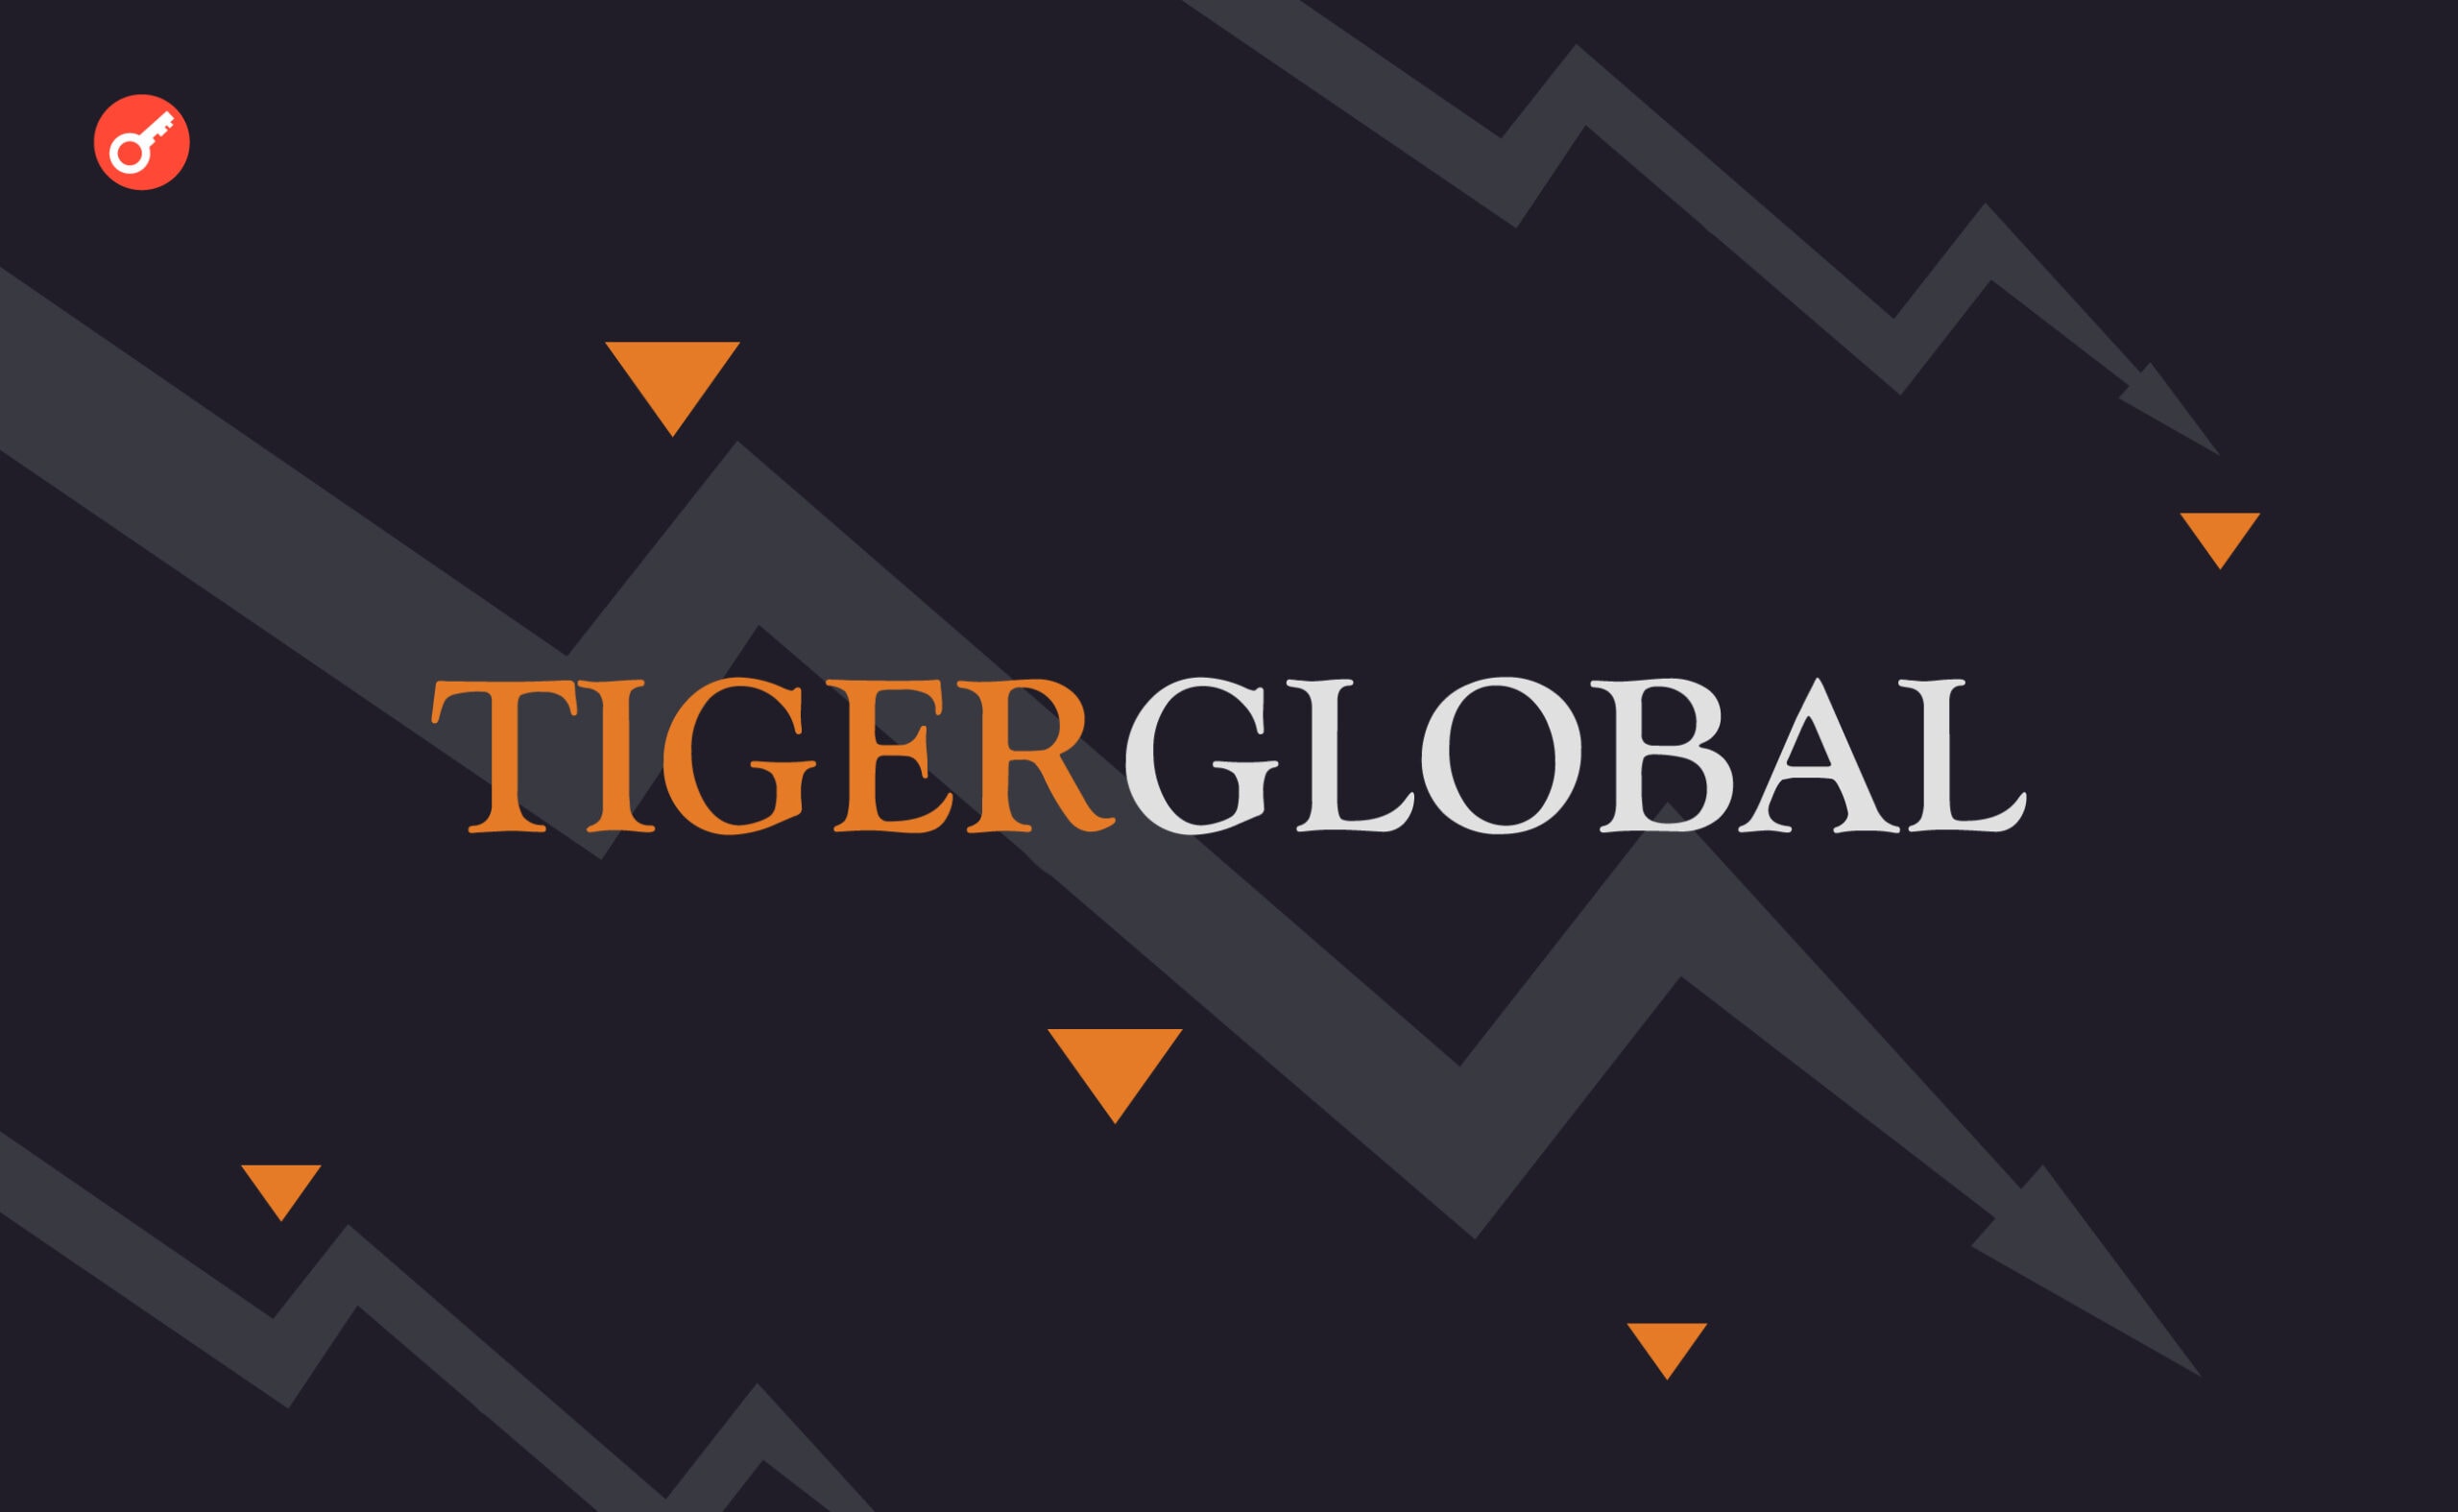 Фонд Tiger Global повідомляє про збитки. Головний колаж новини.